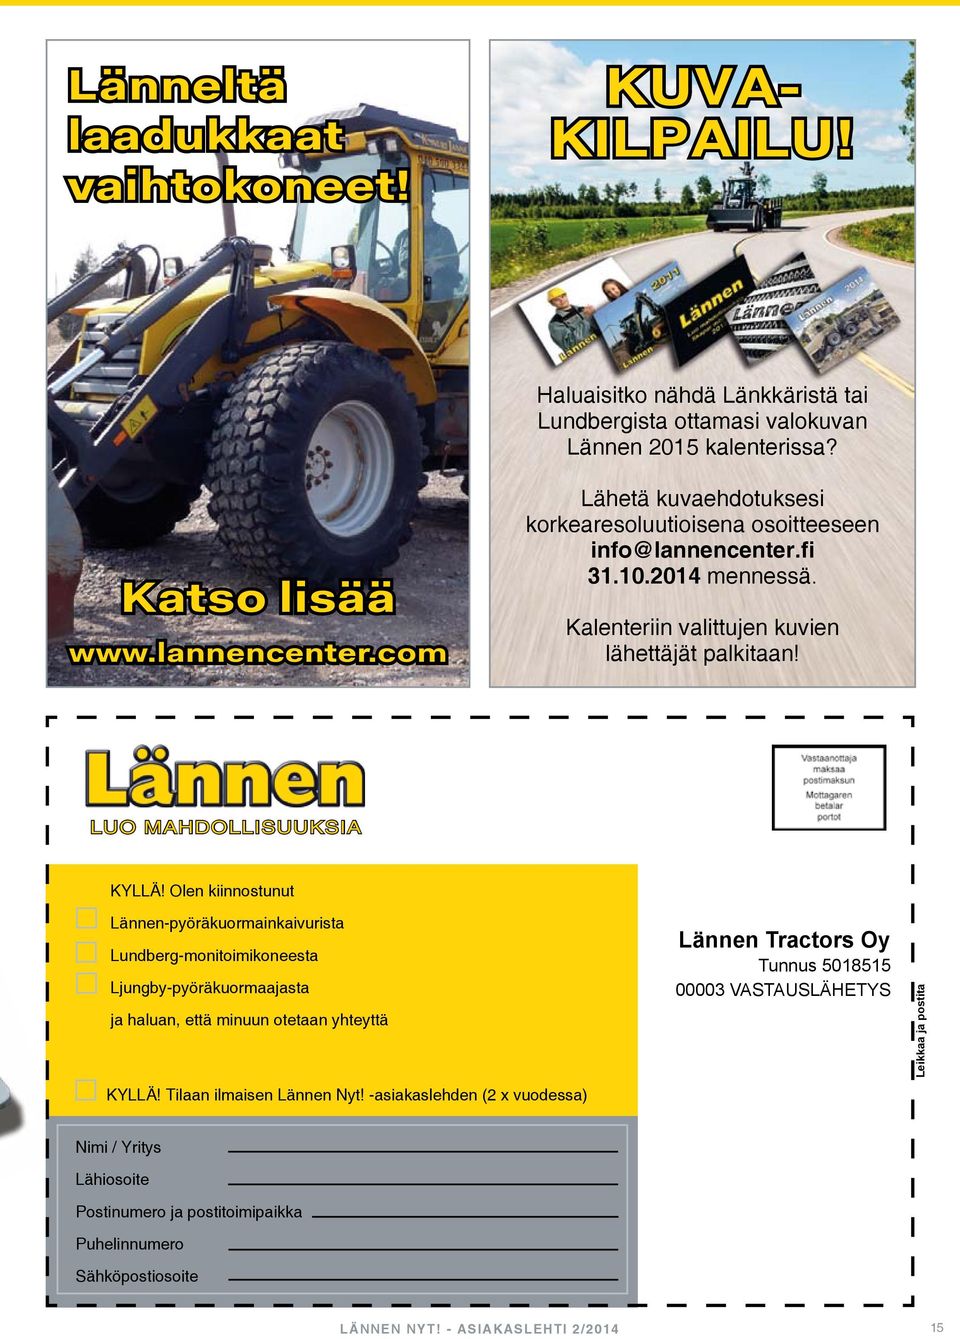 Olen kiinnostunut Lännen-pyöräkuormainkaivurista Lundberg-monitoimikoneesta Ljungby-pyöräkuormaajasta ja haluan, että minuun otetaan yhteyttä KYLLÄ! Tilaan ilmaisen Lännen Nyt!